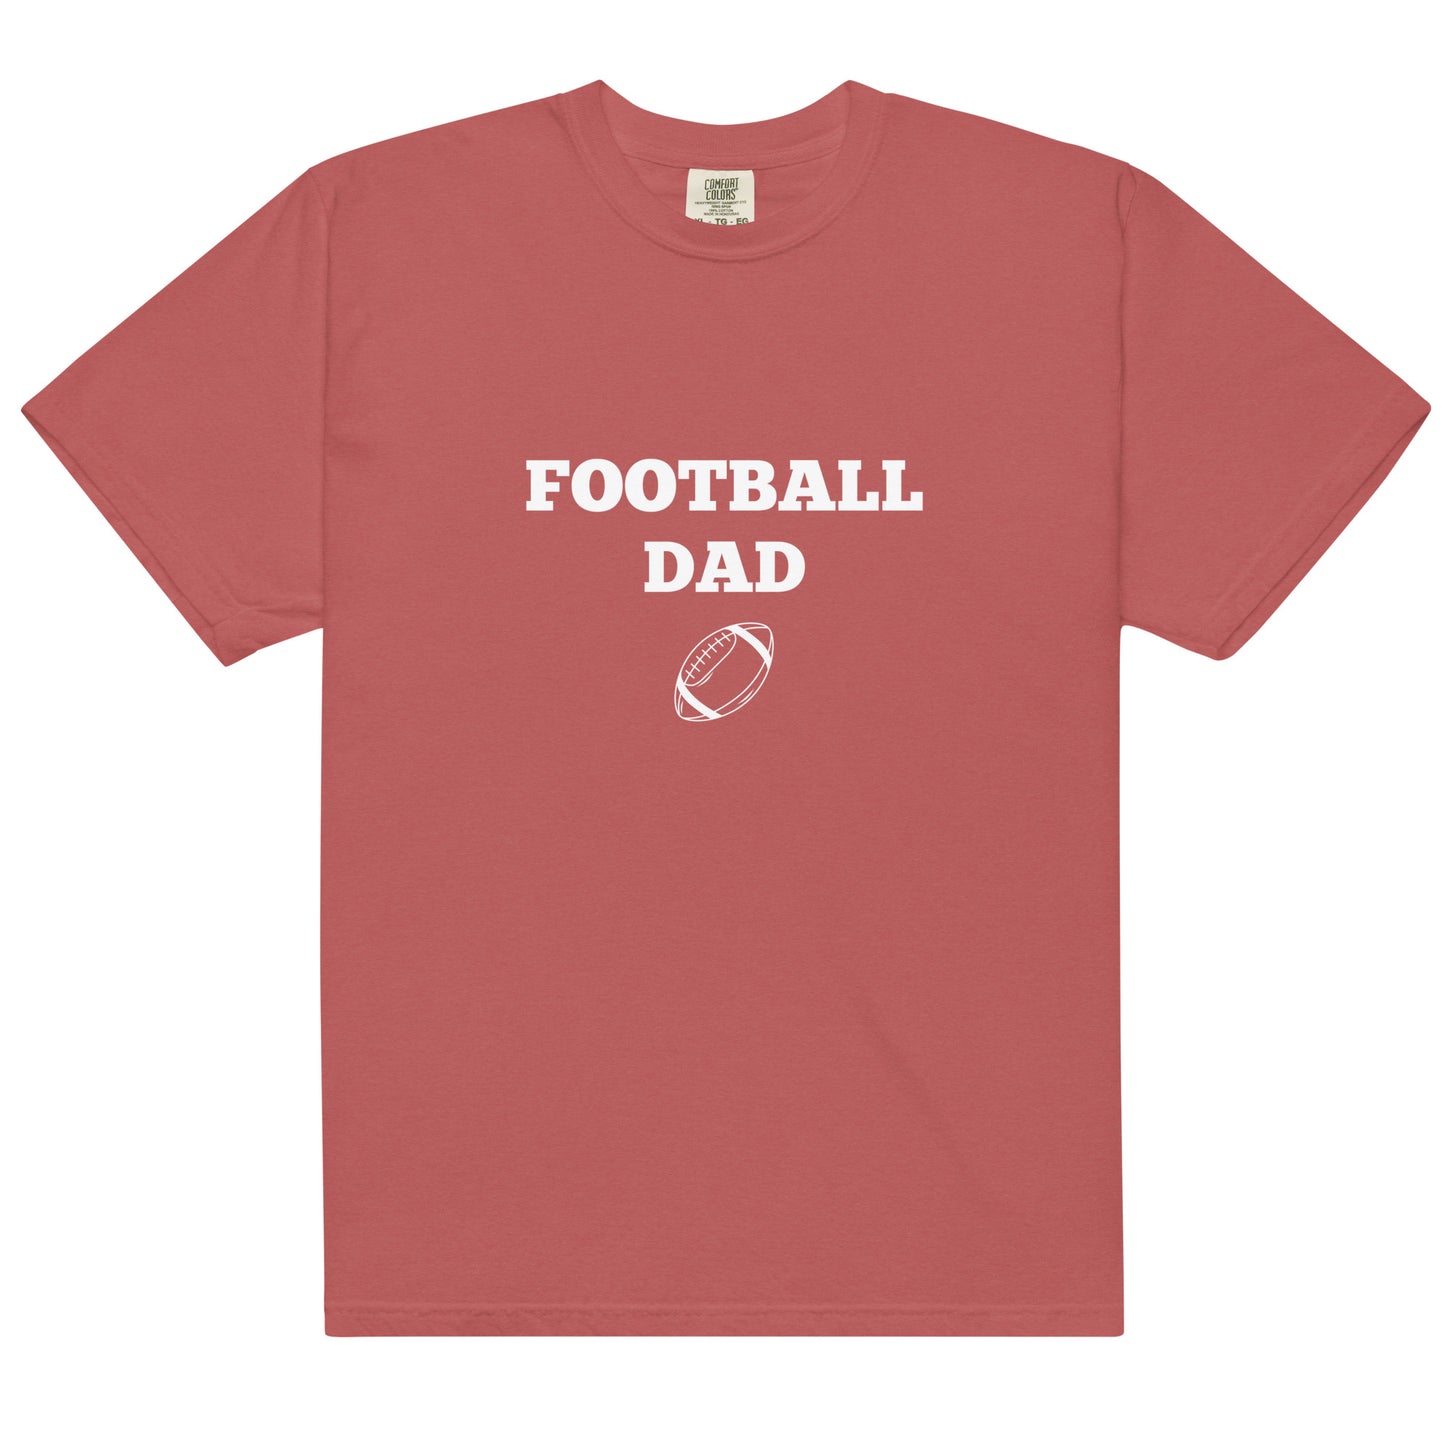 Football Dad Printed Tshirt